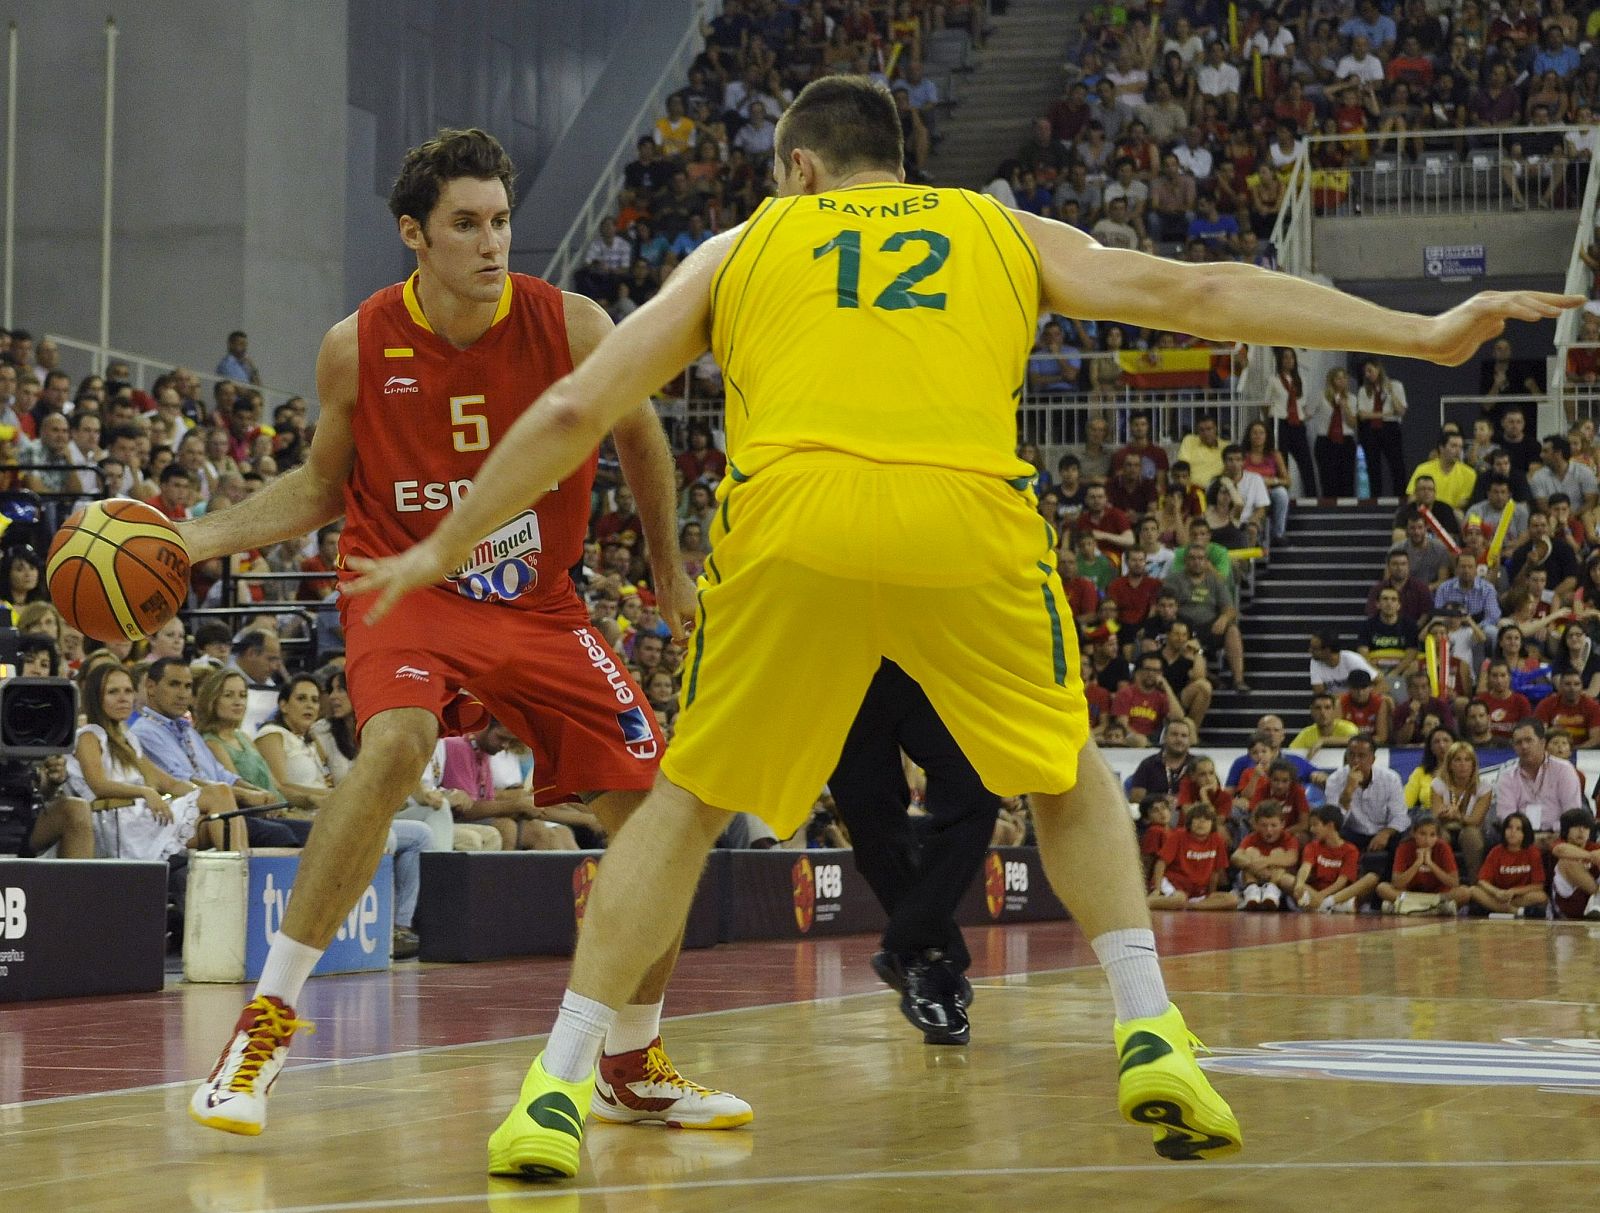 El alero de la selección española Rudy Fernández controla el balón ante Aron Baynes, de la selección australiana.